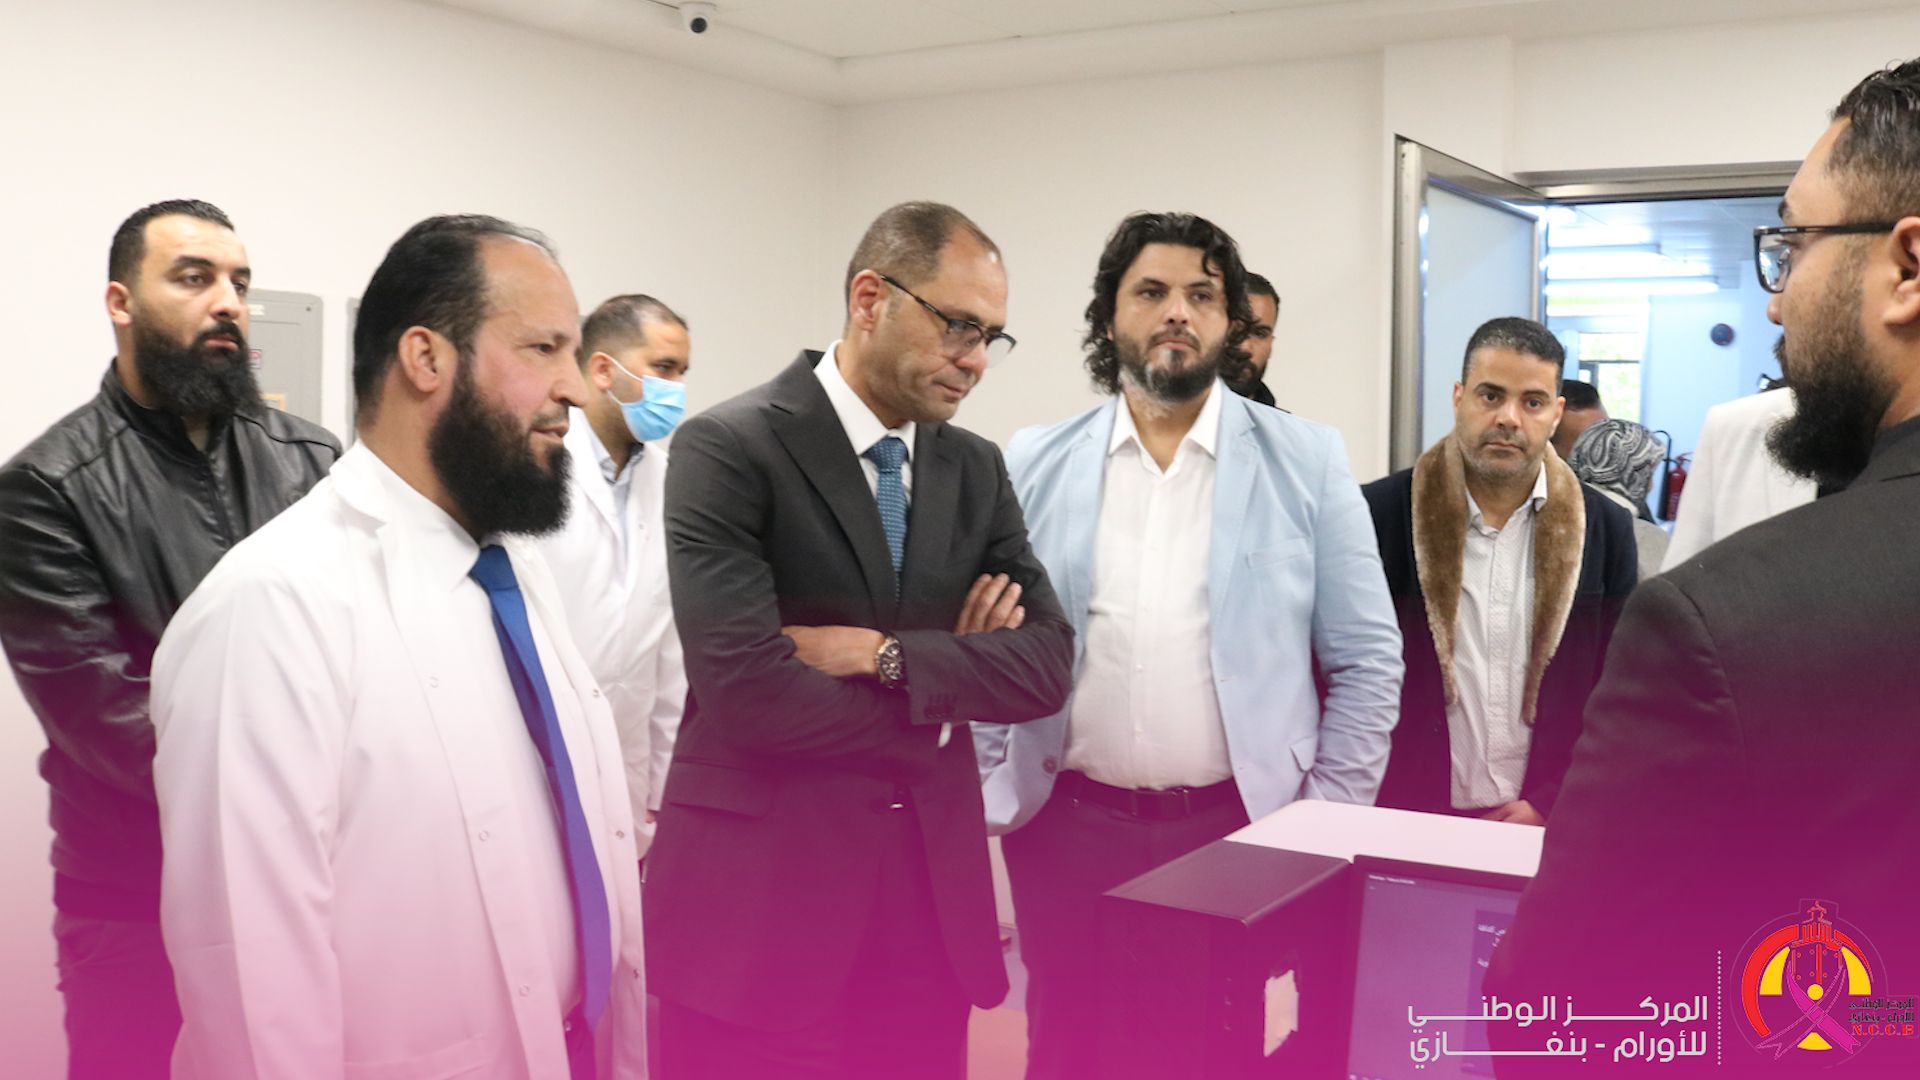 وزير الصحة بالحكومة الليبية يقوم بزيارة لأروقة المركز